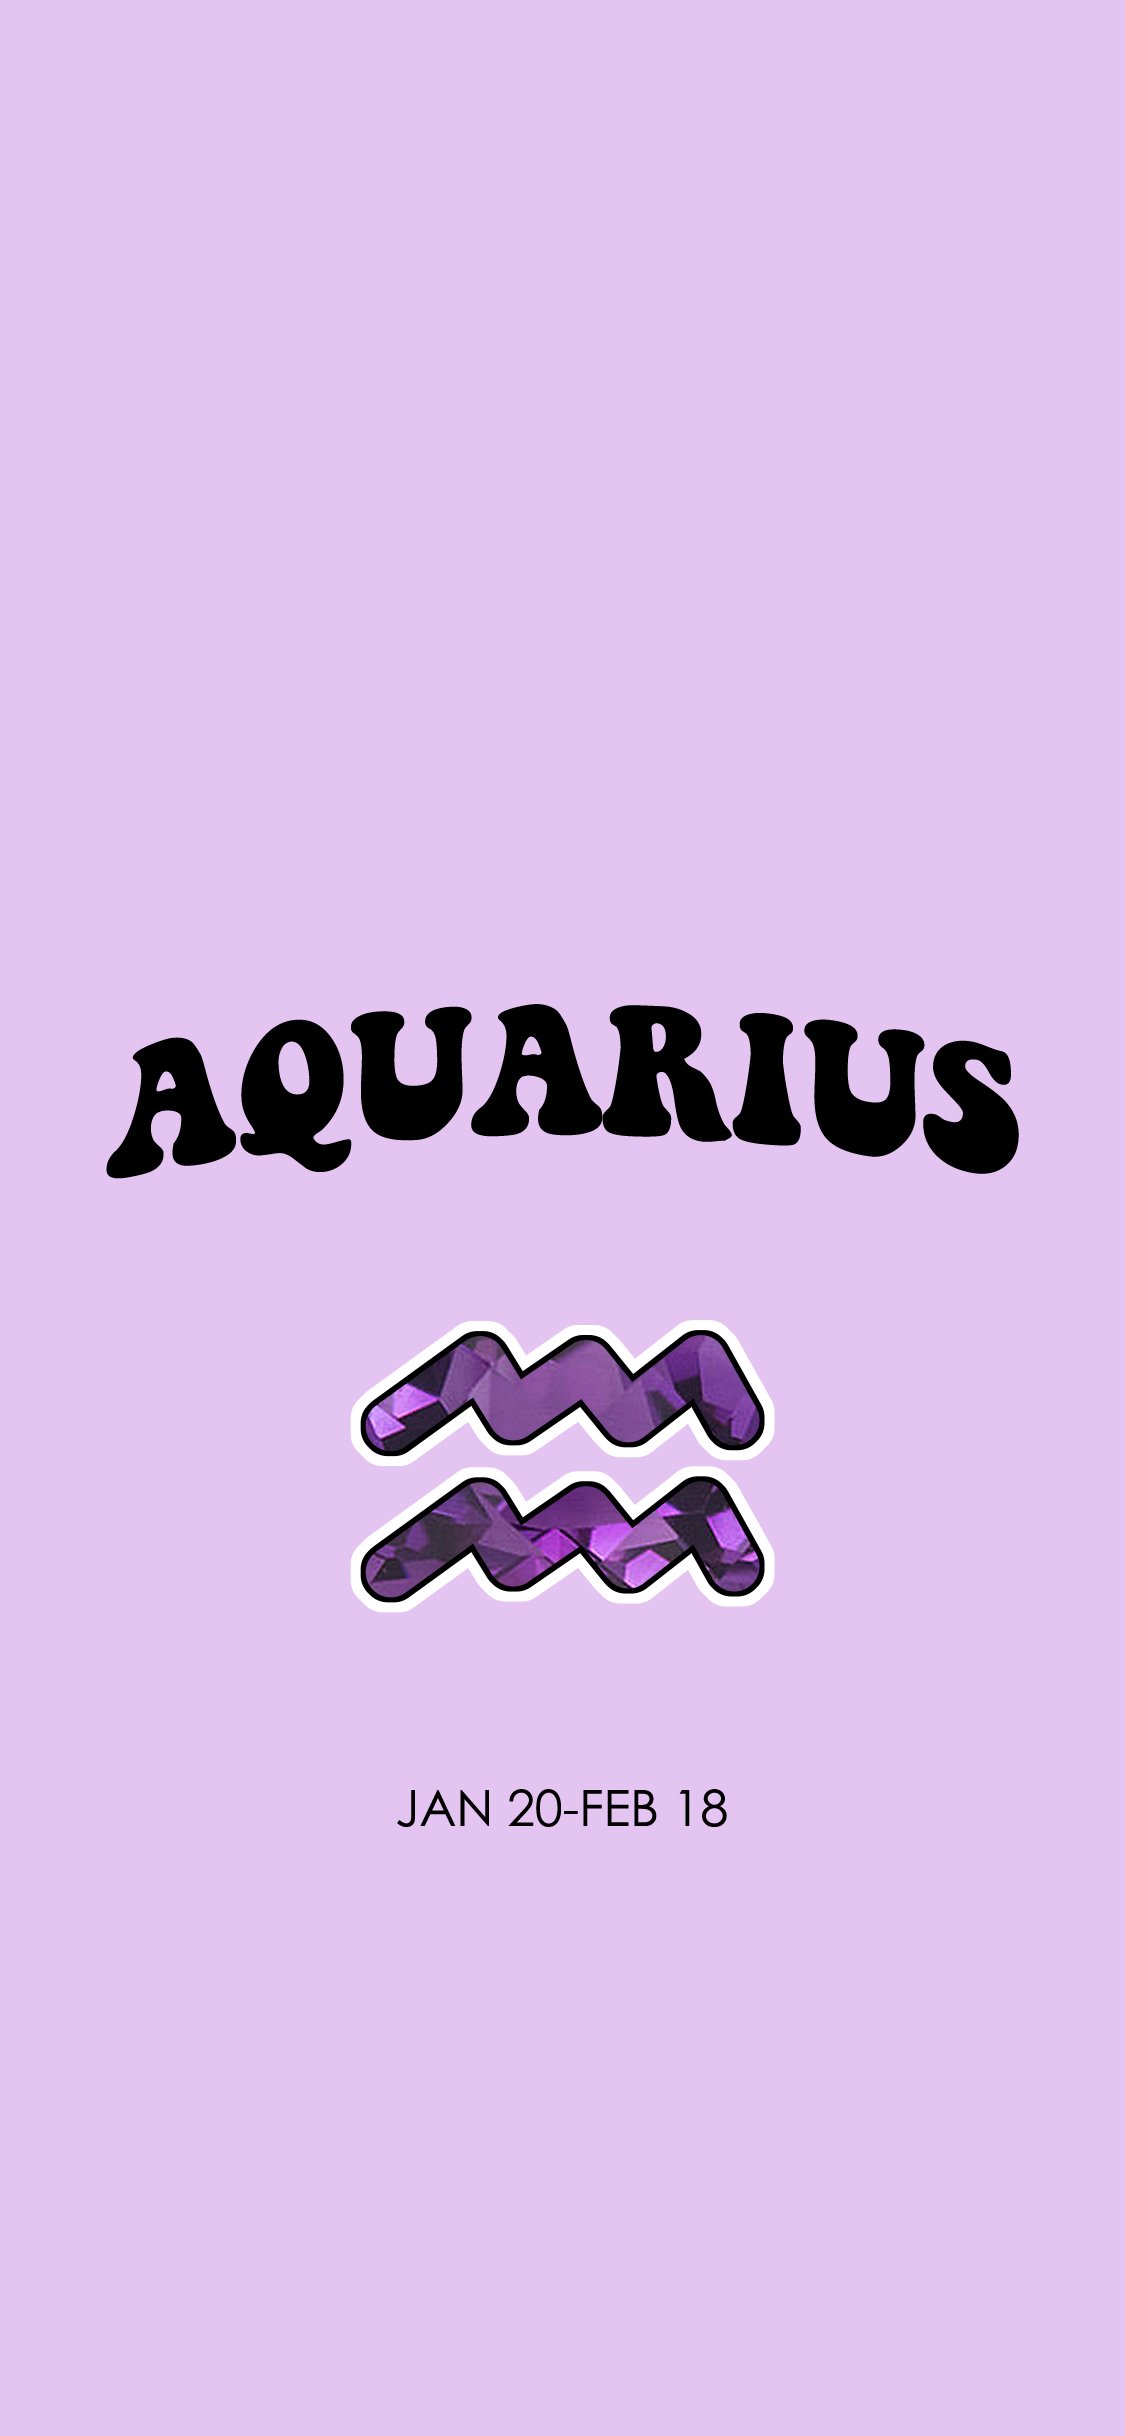 Cute Aquarius Wallpaper Free Cute Aquarius Background